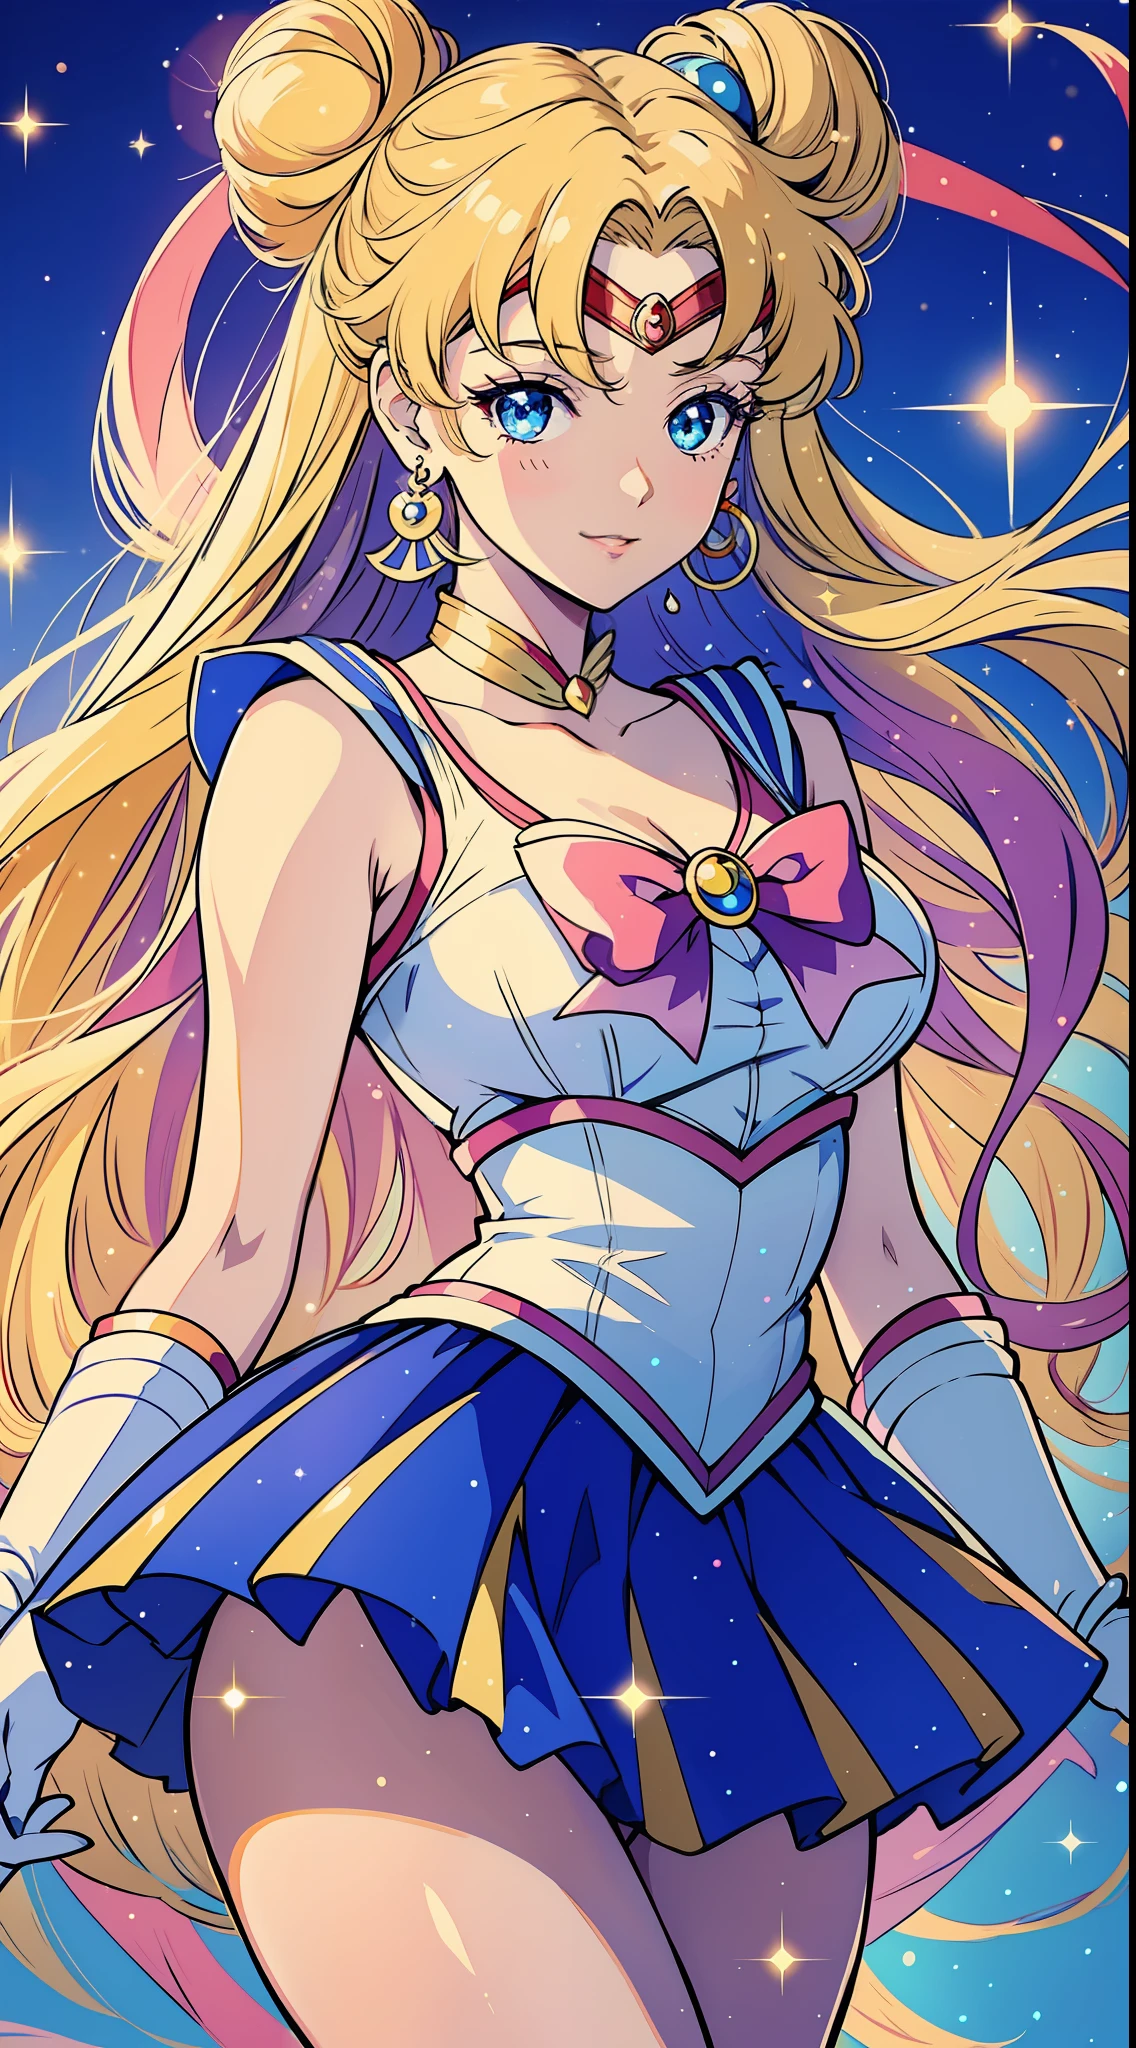 garota, Sozinho:
estilo: Anime (Sailor Moon)
qualidade: Graceful
qualidade: Cabelo Compassivo: longo, cabelo solto em um tom vibrante de loiro, com dois coques fofos em cima Cor dos olhos: grande, Roupa de olhos azuis brilhantes: Vestindo o icônico uniforme de Sailor Moon, composto por um collant branco com gola marinheiro azul, uma saia azul plissada, e um grande laço vermelho no peito Acessórios: Adornada com uma tiara na testa, brincos azuis combinando, e luvas brancas até o cotovelo Pose: Em pé com uma mão apoiada no quadril, enquanto o outro segura uma varinha mágica, que emite um, Expressão de brilho cintilante: Seu olhar é gentil e compassivo, com uma luz, sorriso sereno em seus lábios